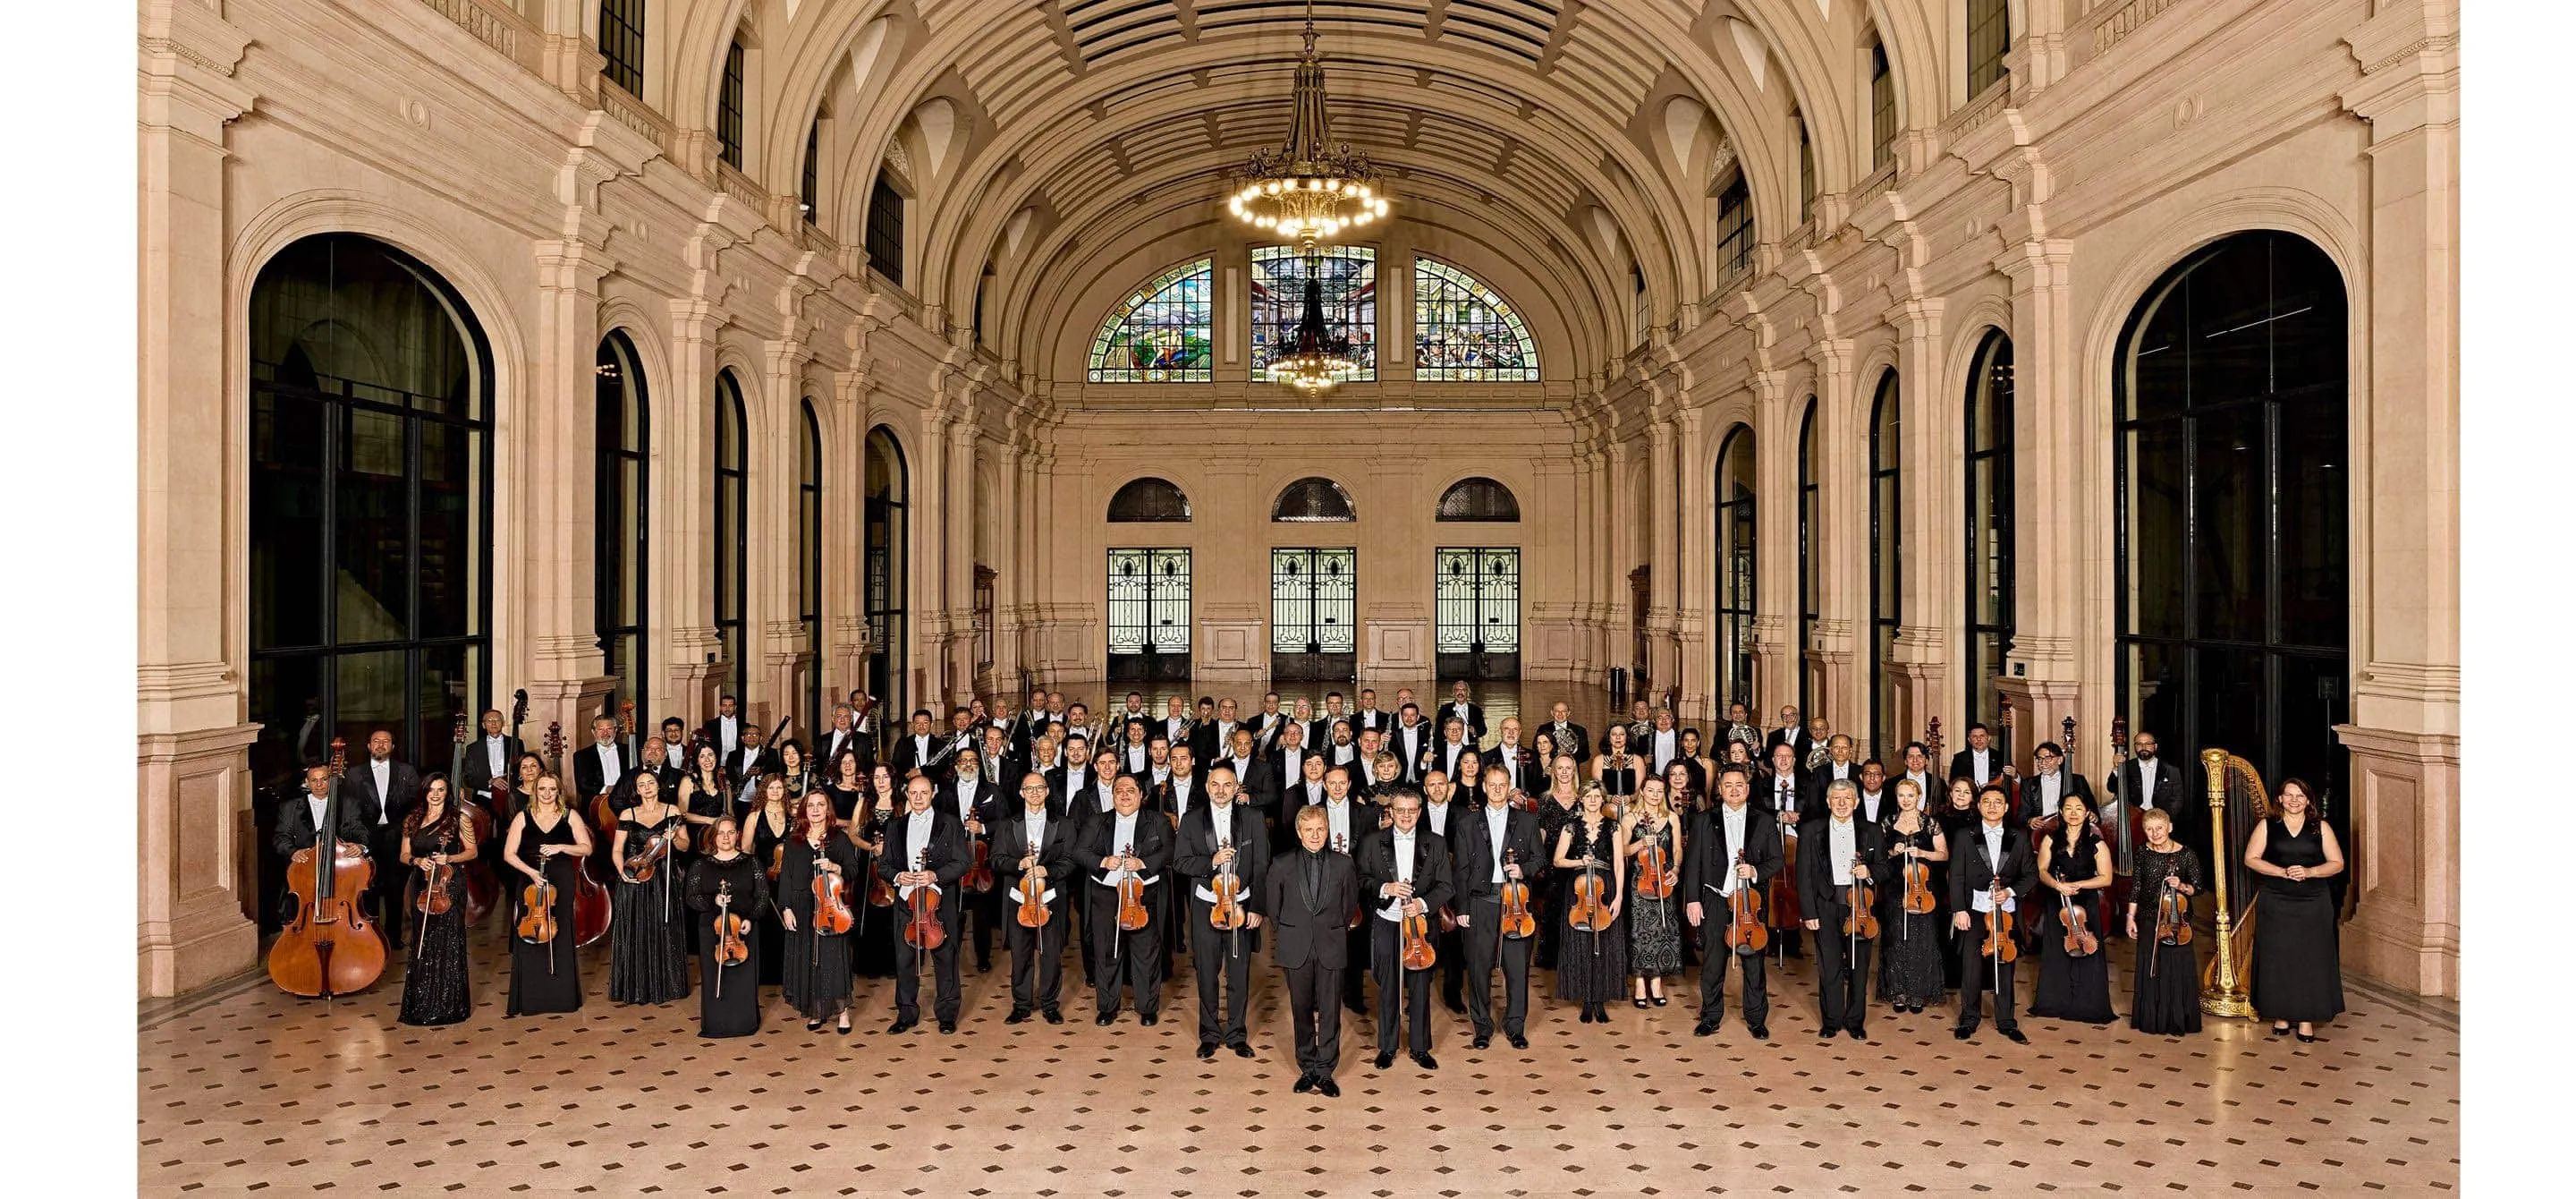 Os músicos da Orquestra estão posicionados na Estação das Artes da Sala São Paulo, um grande salão com colunas beges e chão com desenhos com de rosa. Os músicos vestem preto e estão segurando seus instrumentos.